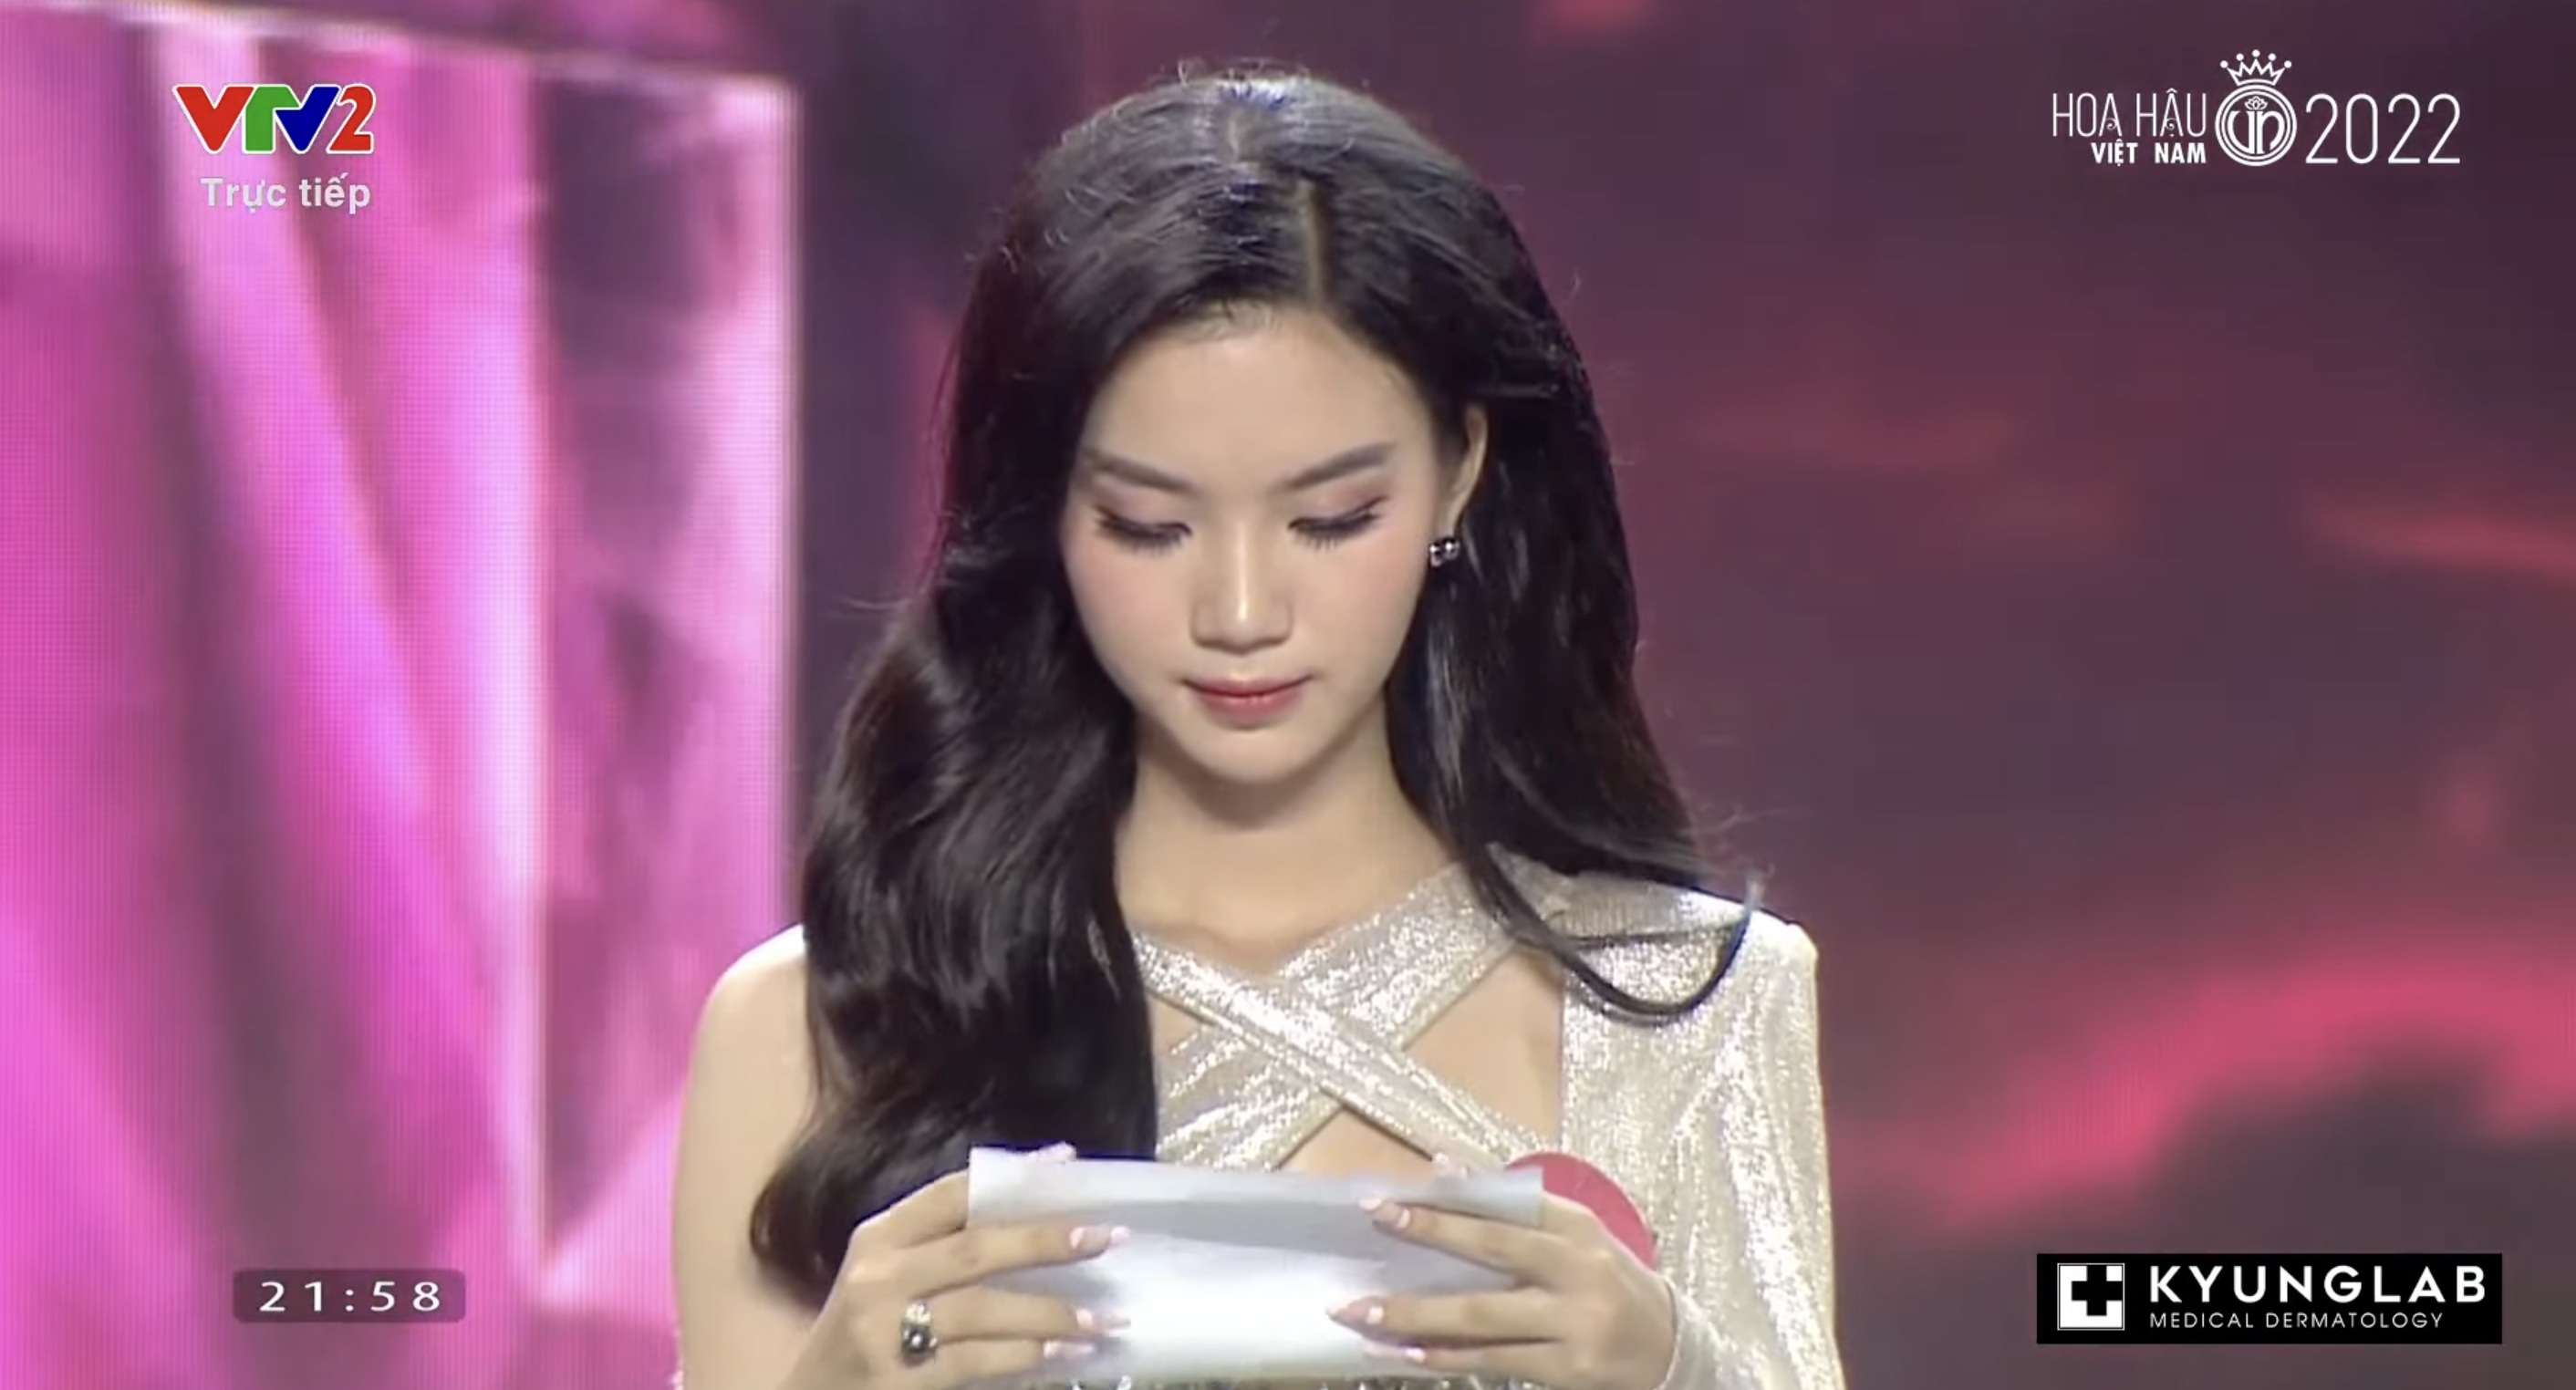 Chung kết Hoa hậu Việt Nam 2022: Tân Hoa hậu chính thức gọi tên Huỳnh Thị Thanh Thuỷ - 21